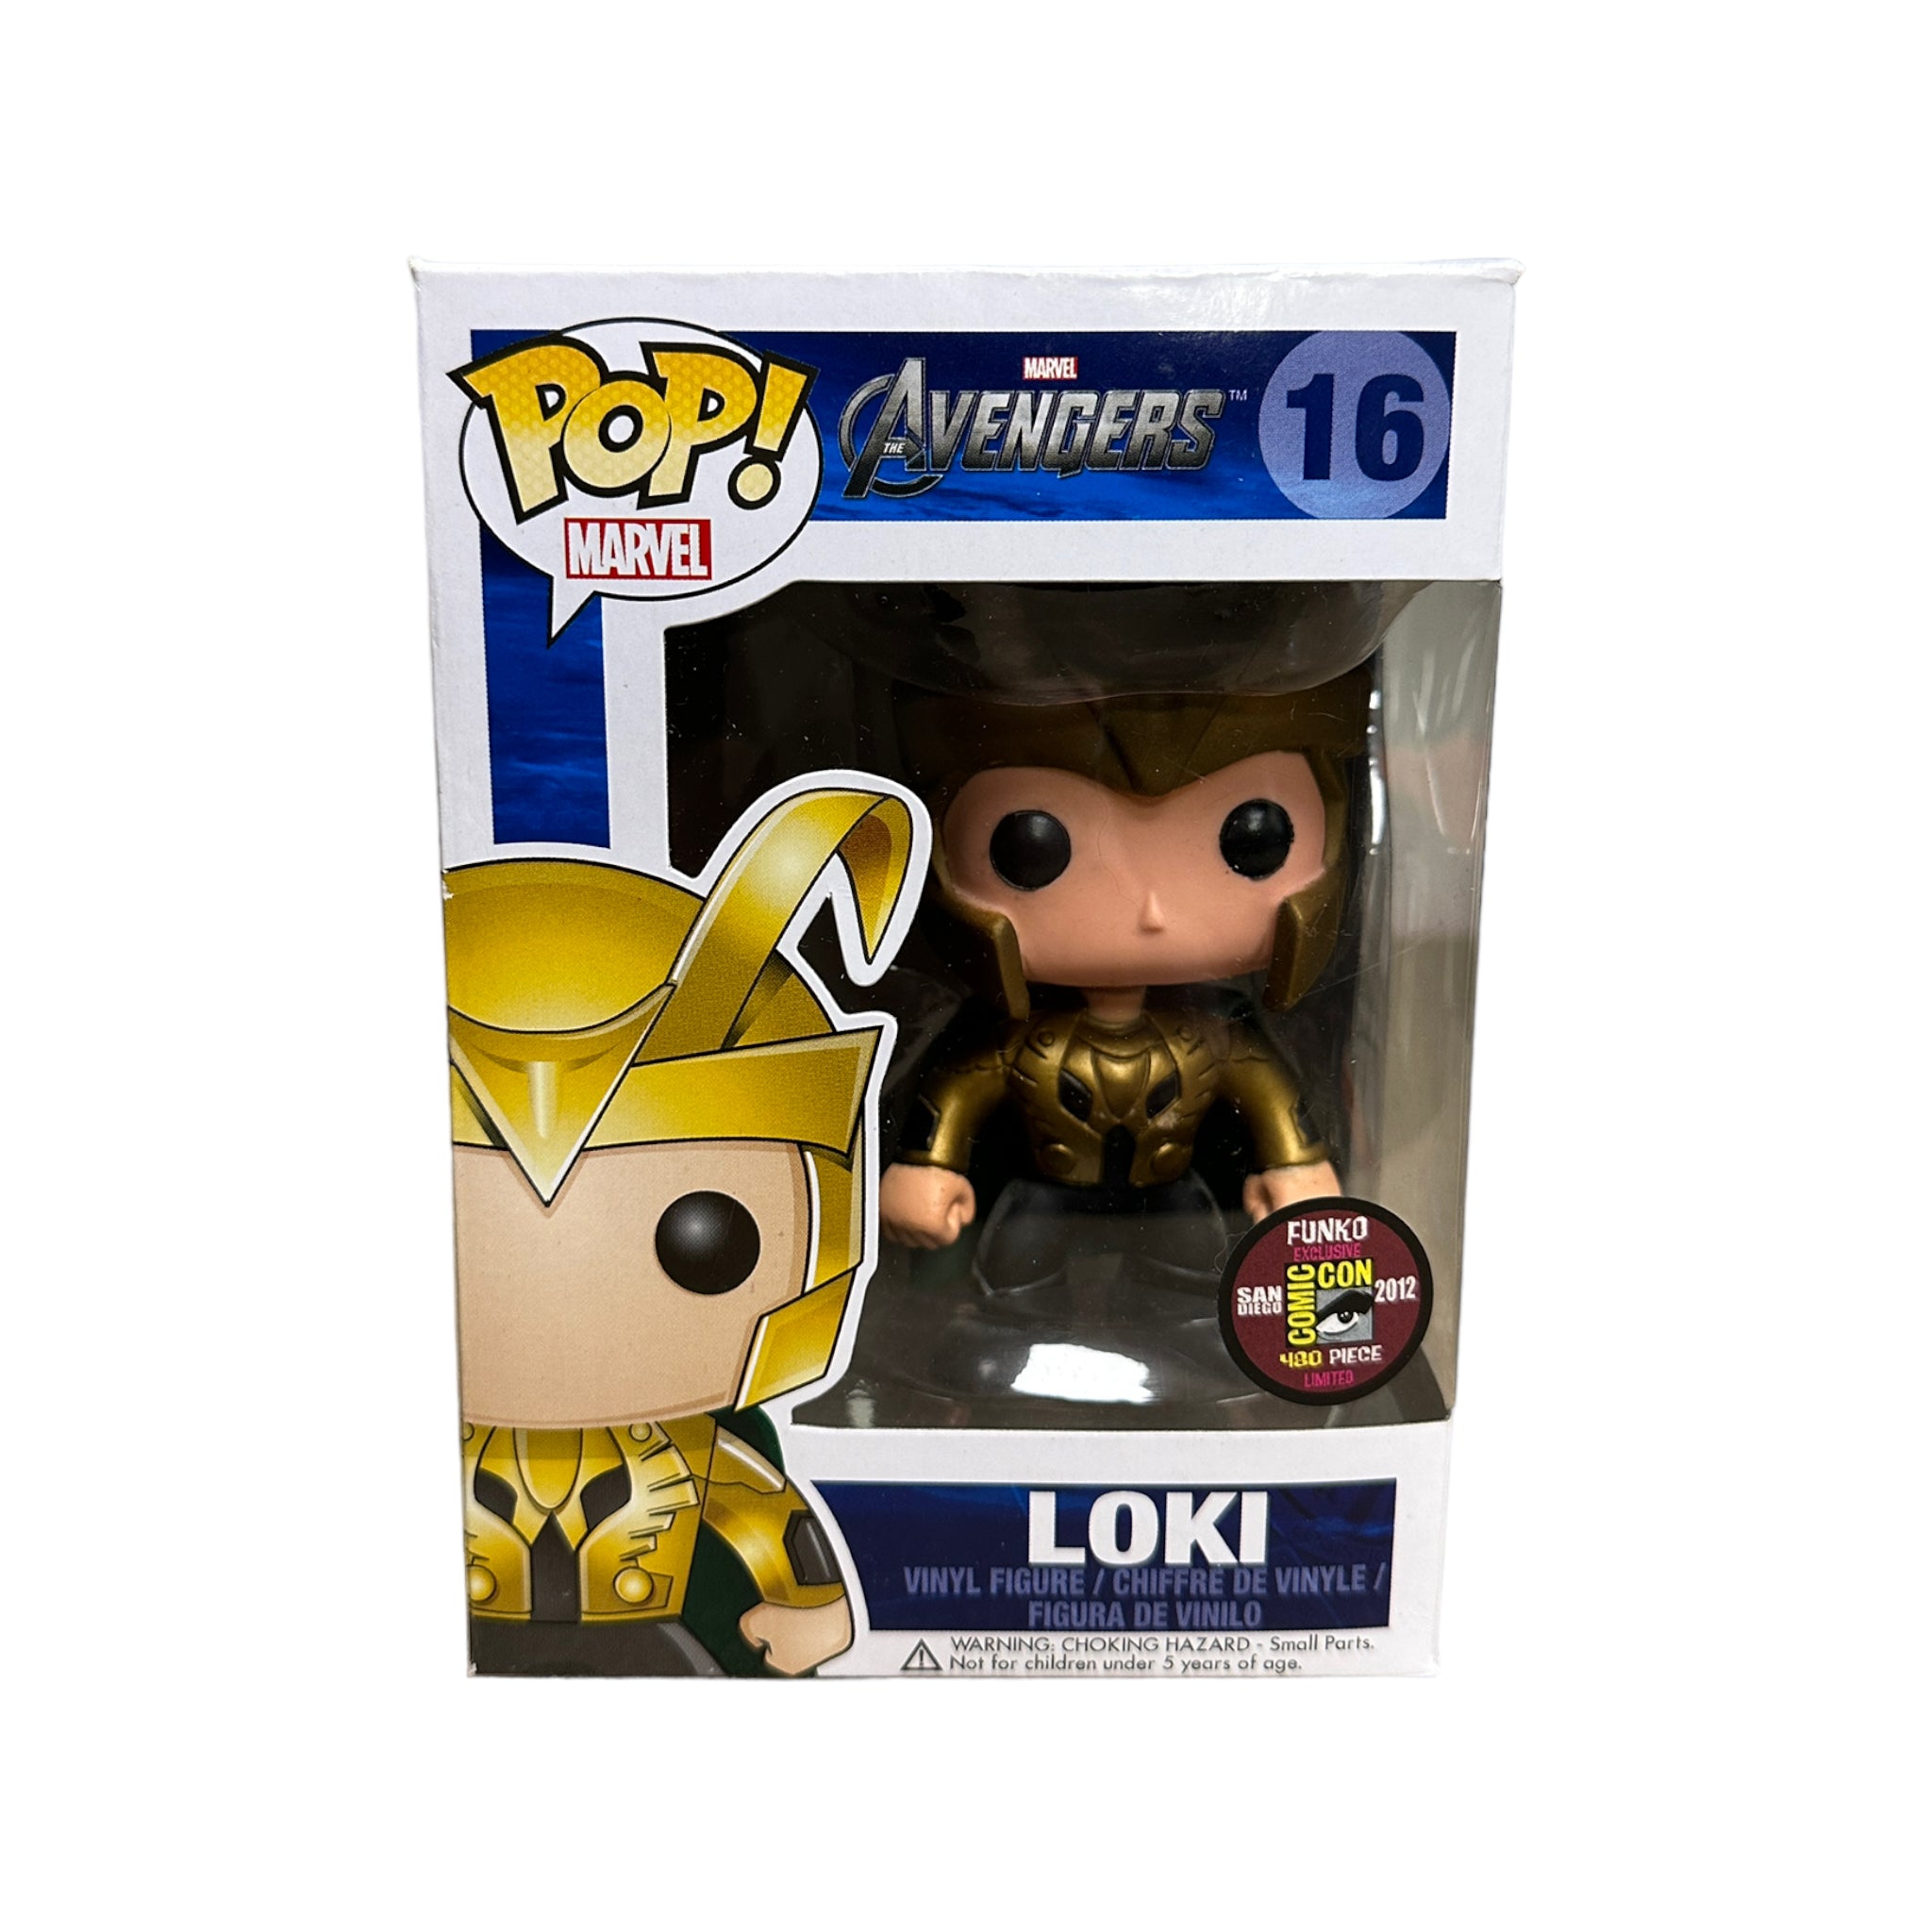 Loki #16 Funko Pop! - The Avengers - SDCC 2012 Exclusive LE480 Pcs - Condition 8.75/10